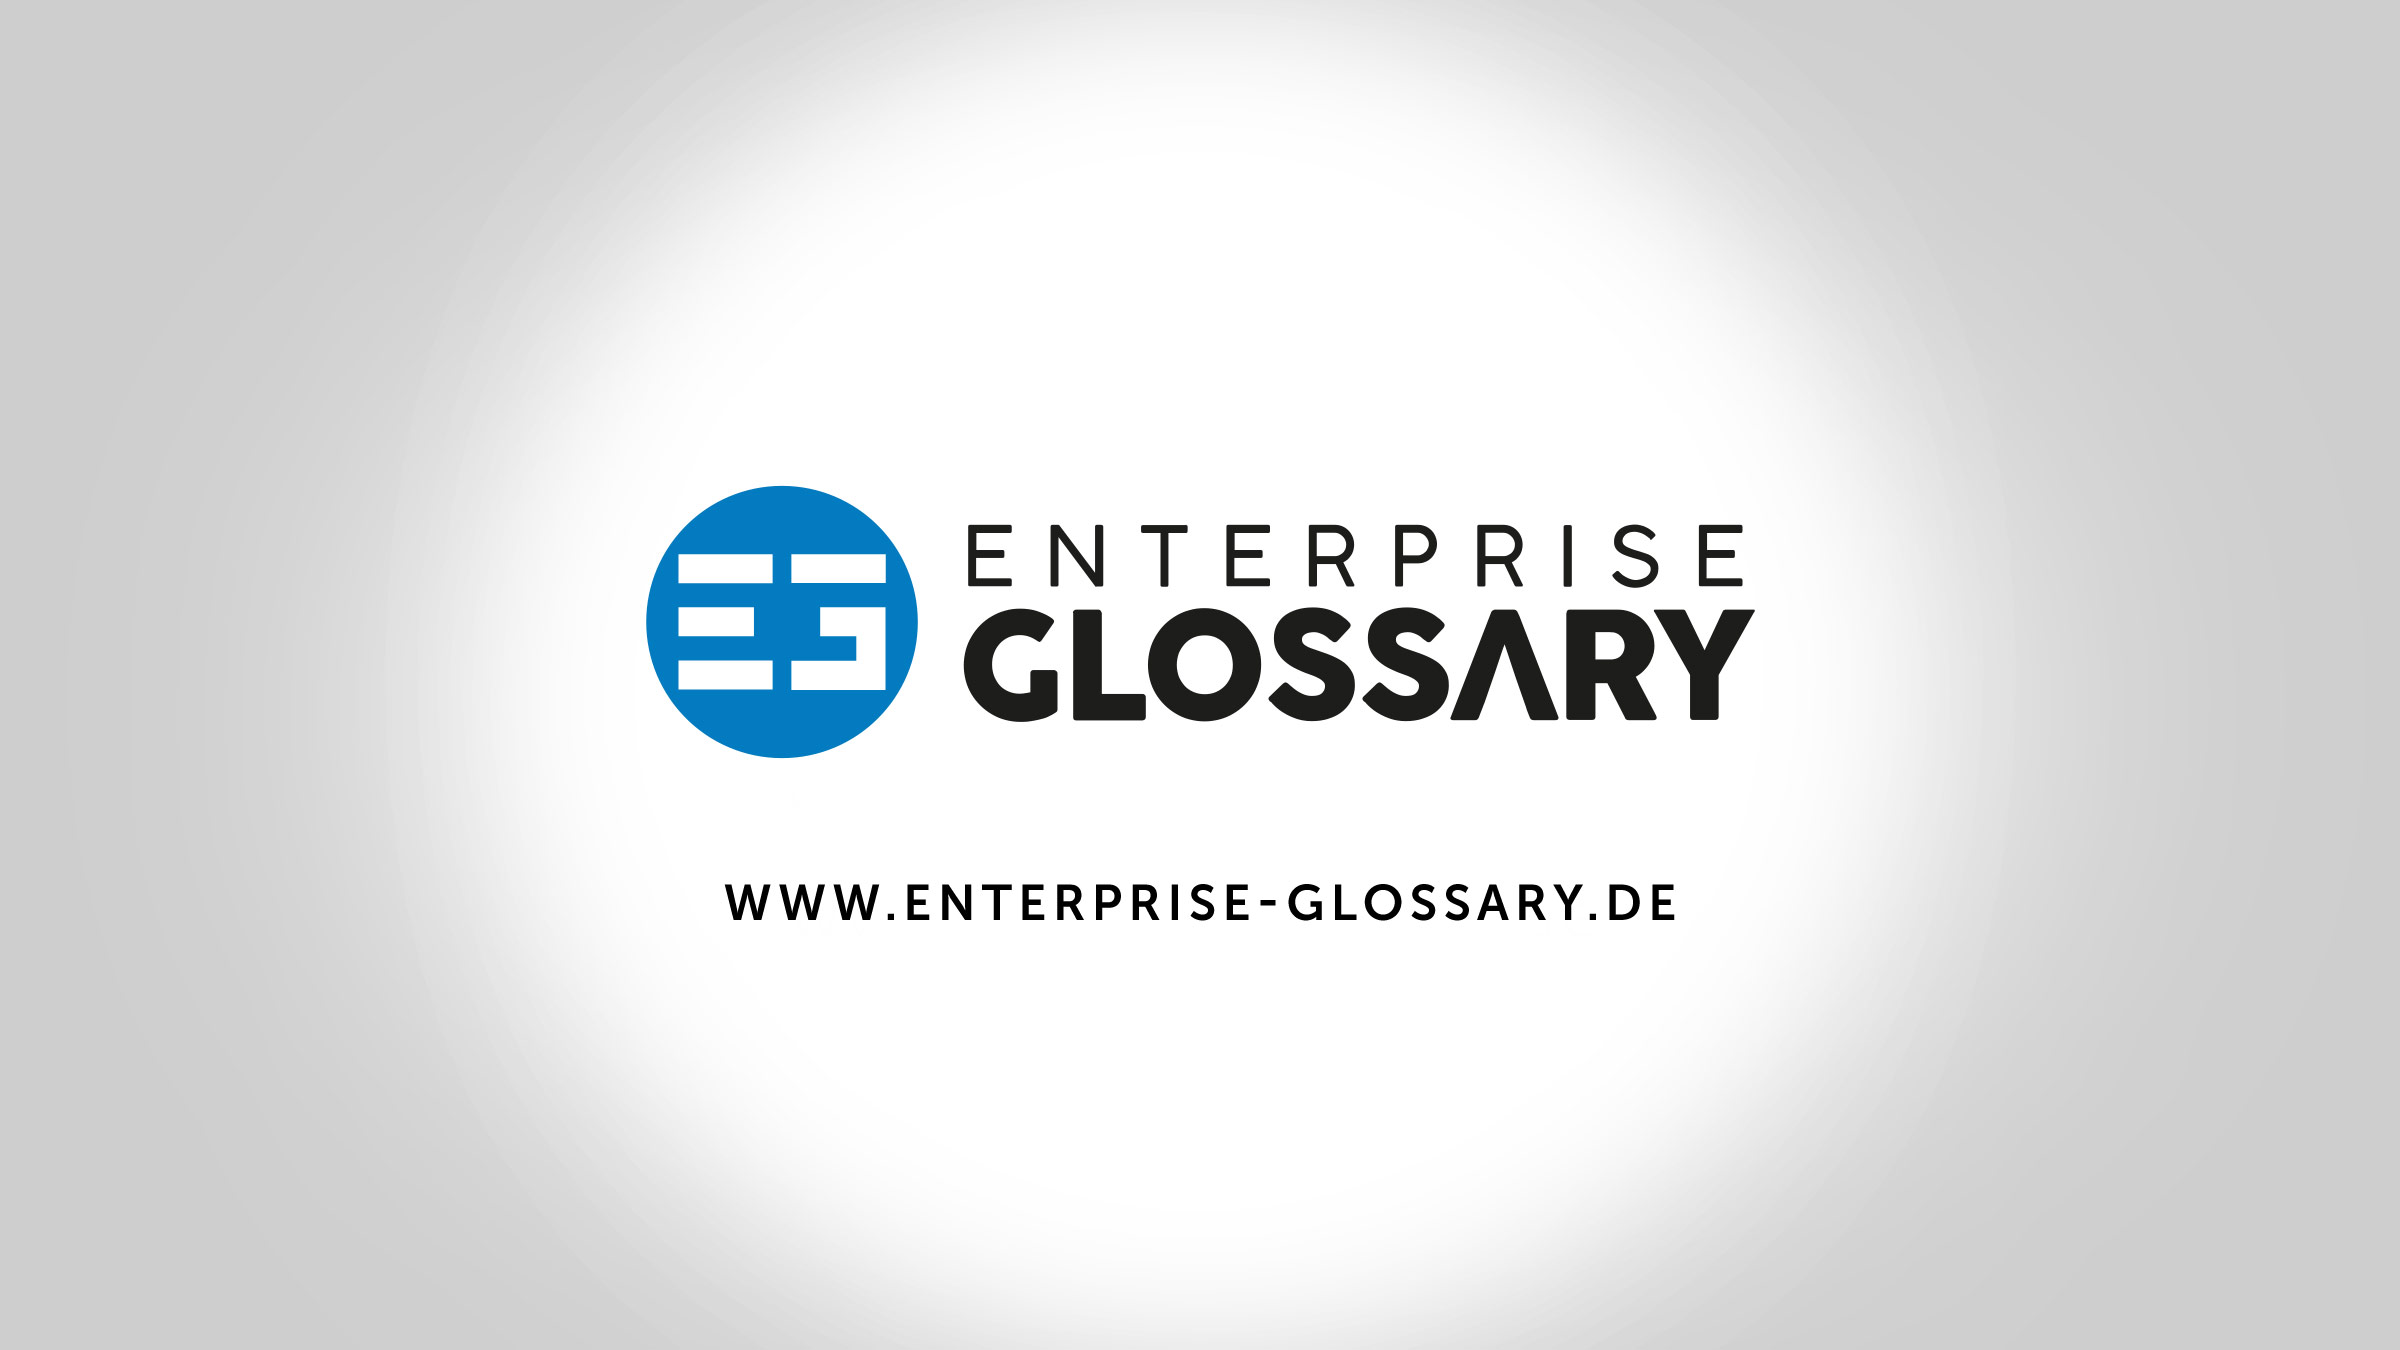 (c) Enterprise-glossary.de